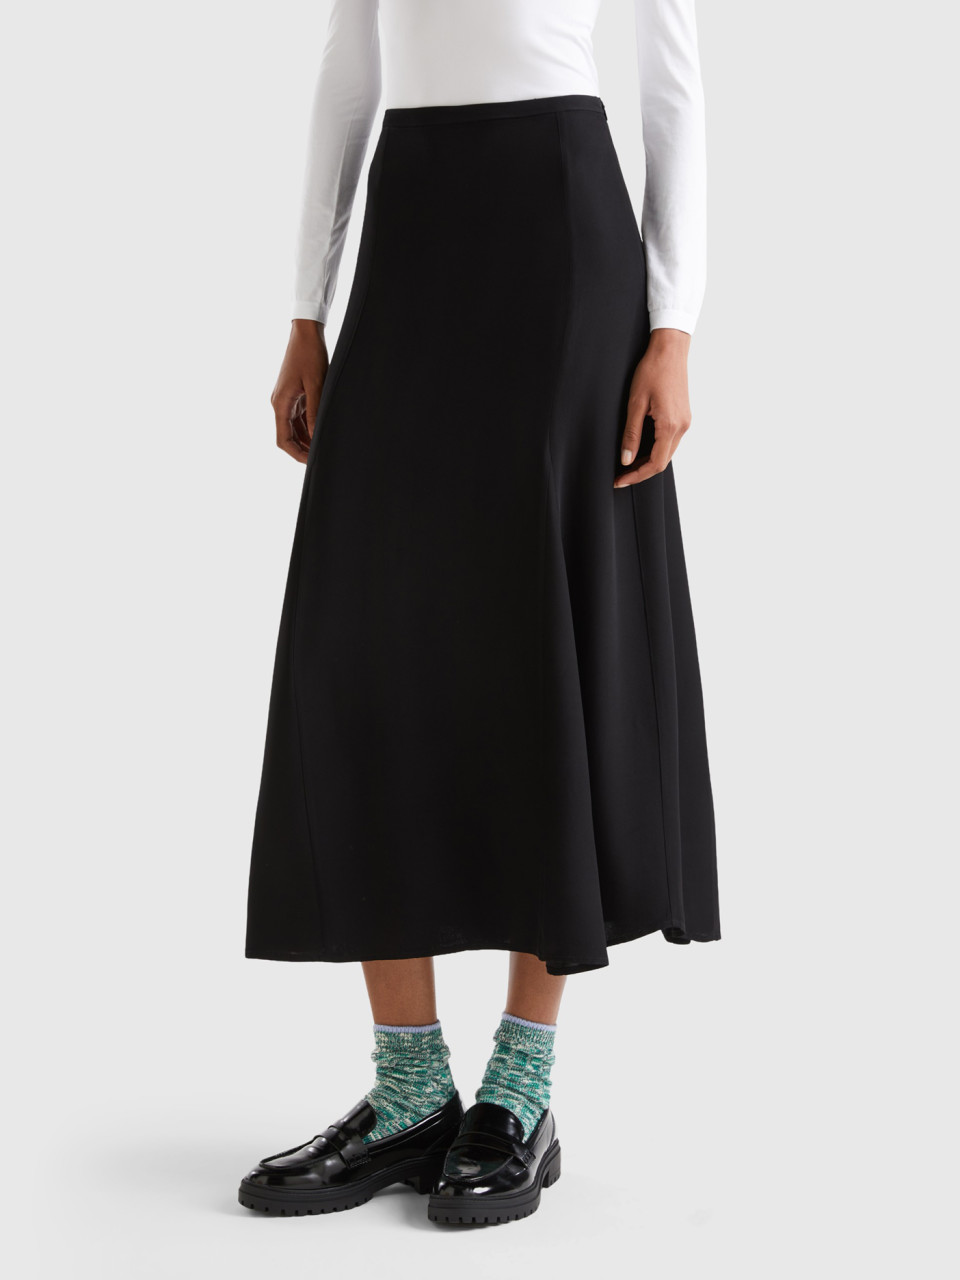 Benetton, Satin Skirt, Black, Women